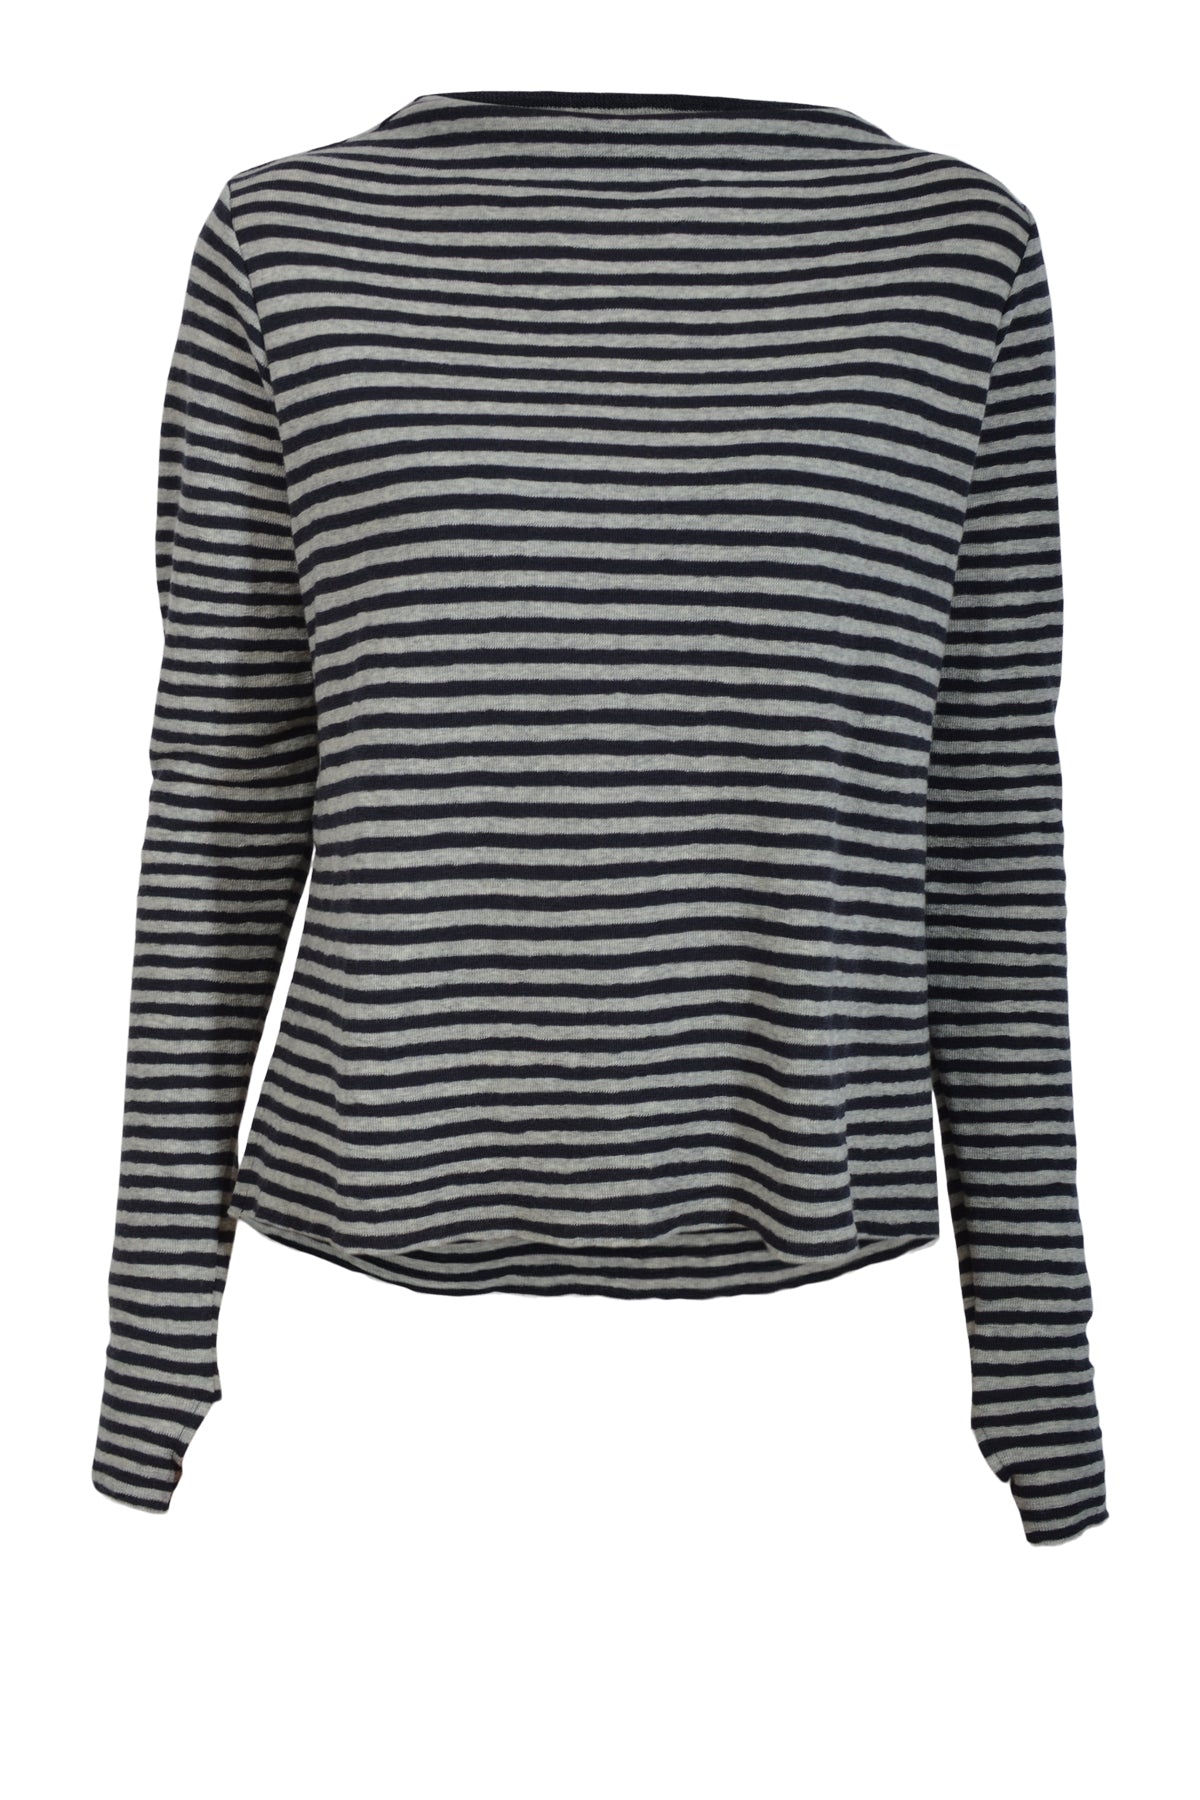 Blusbar by basic 4040 Shirt L/S w/high neck & slits, Charcoal/dawn grey melange